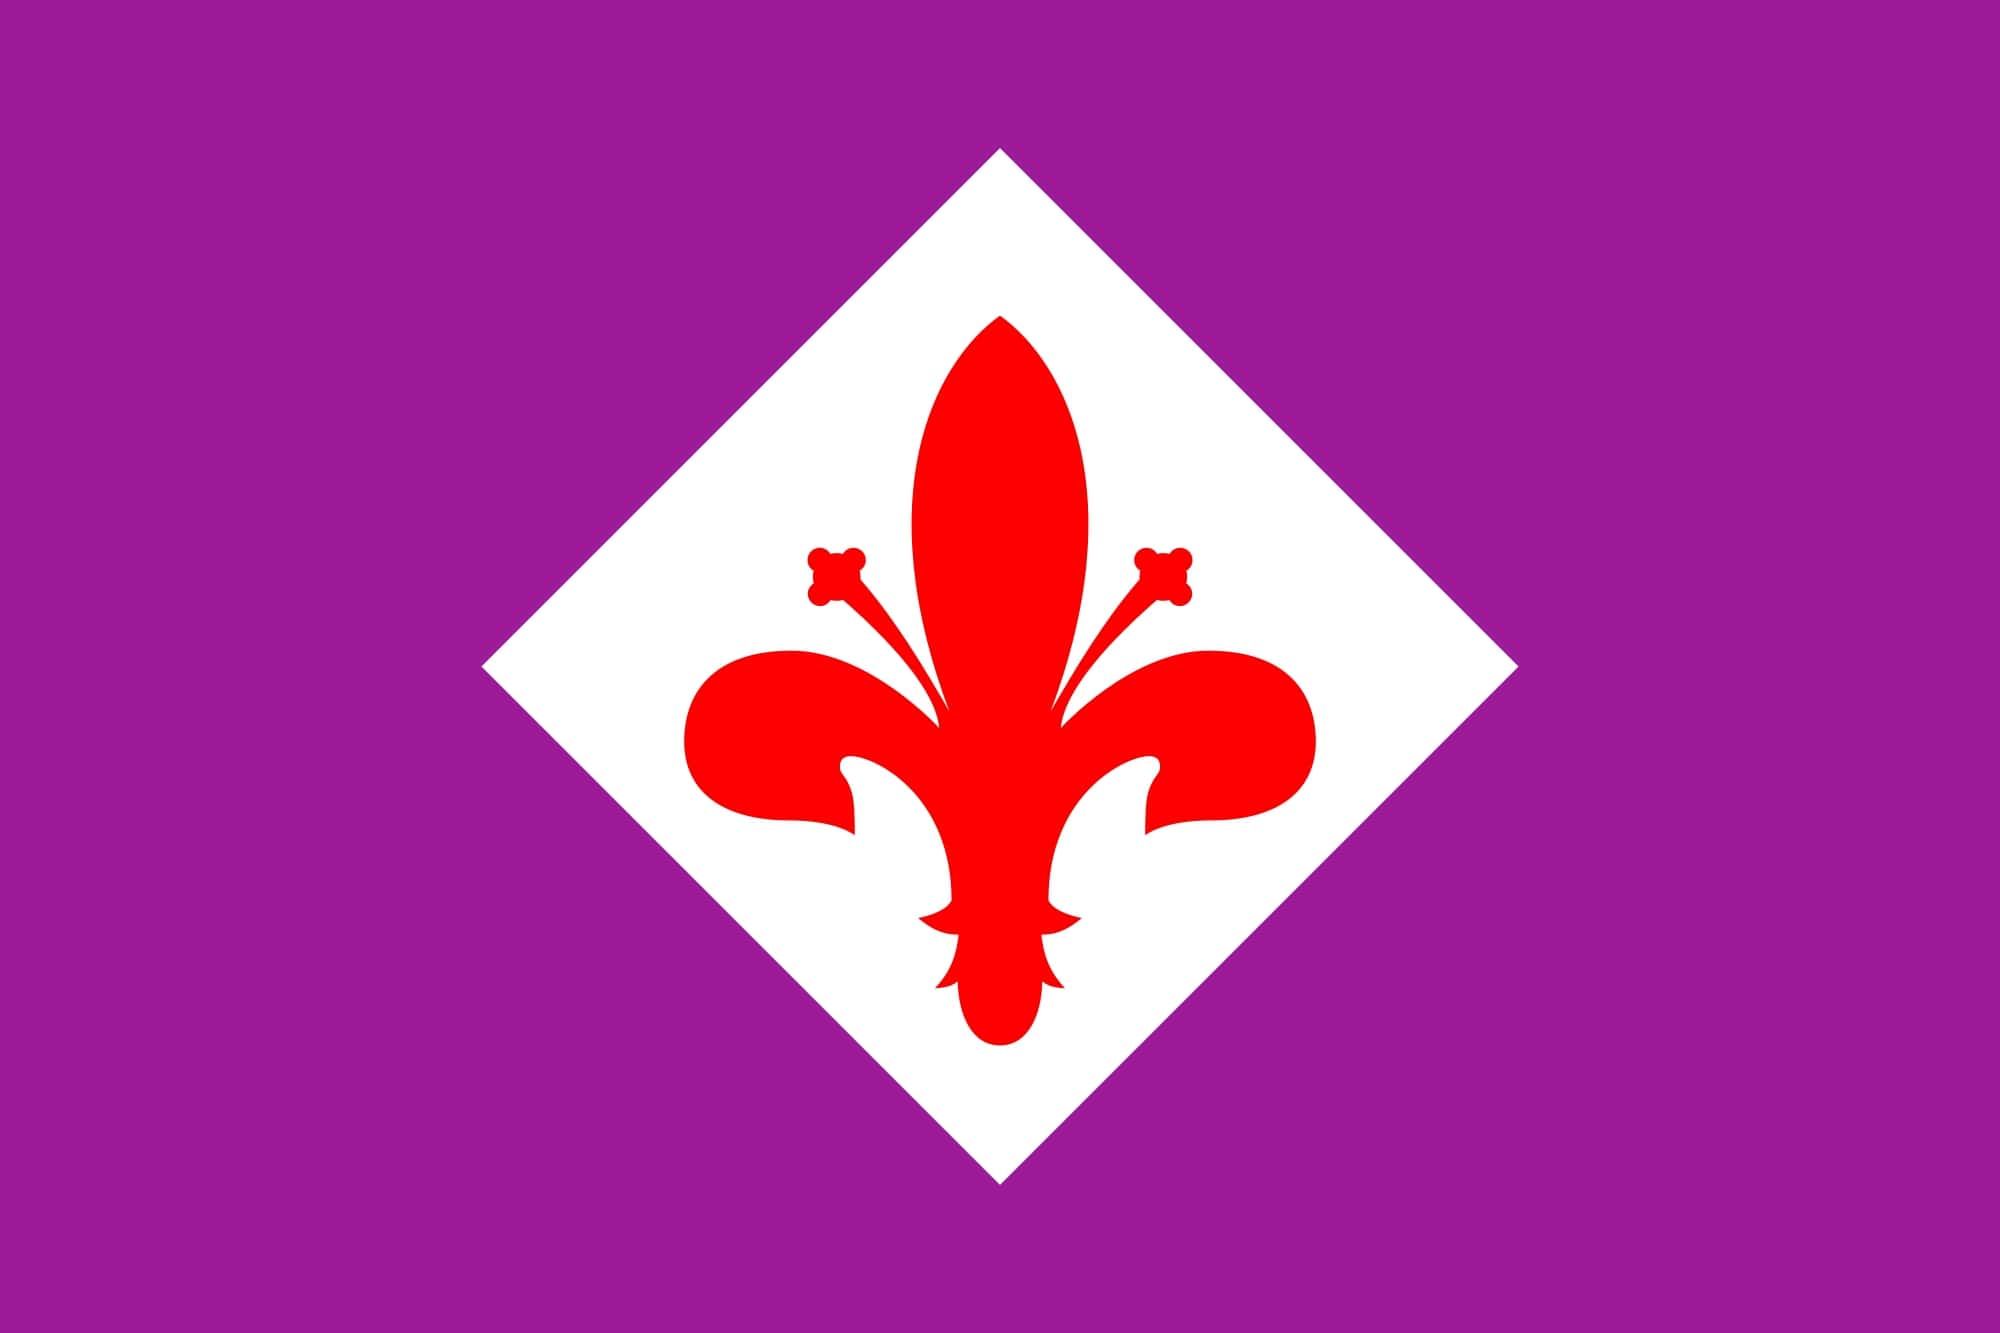 Fiorentina-Pioli, è guerra aperta. Le parole della società